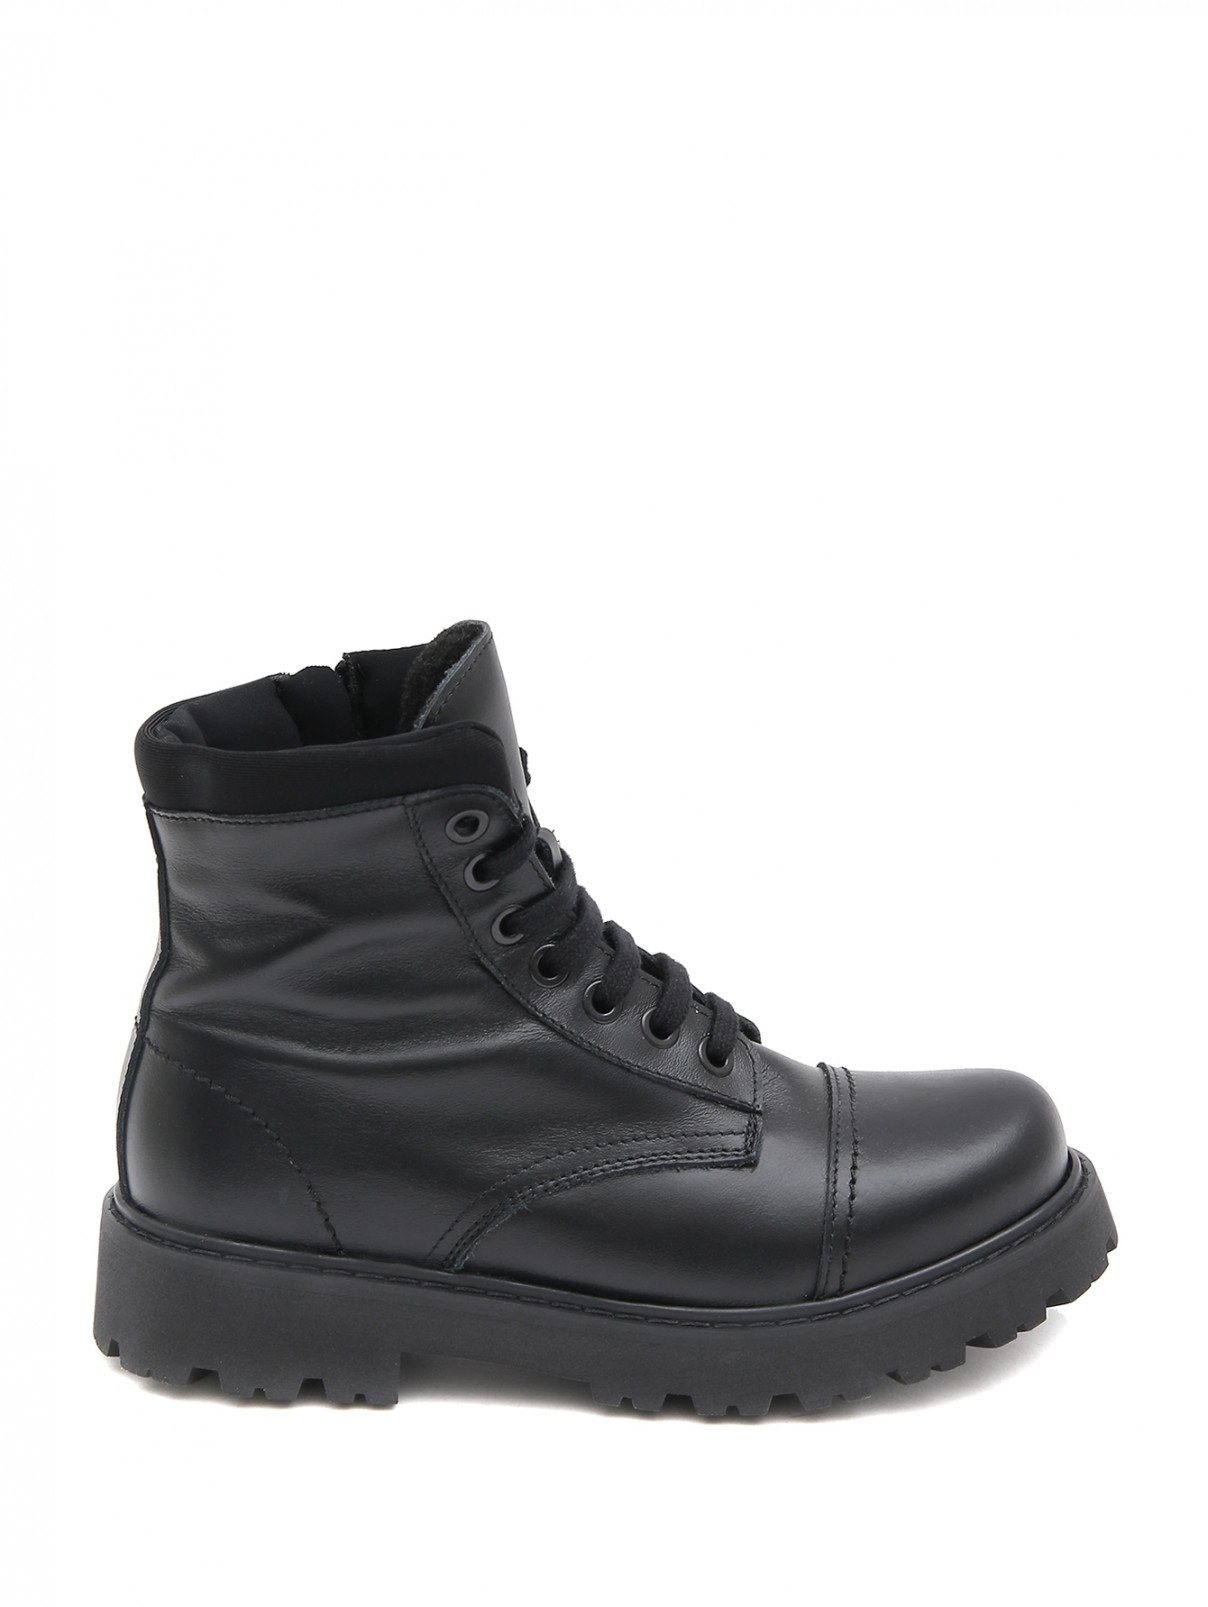 Высокие ботинки на шнуровке MONTELPARE TRADITION  –  Обтравка1  – Цвет:  Черный